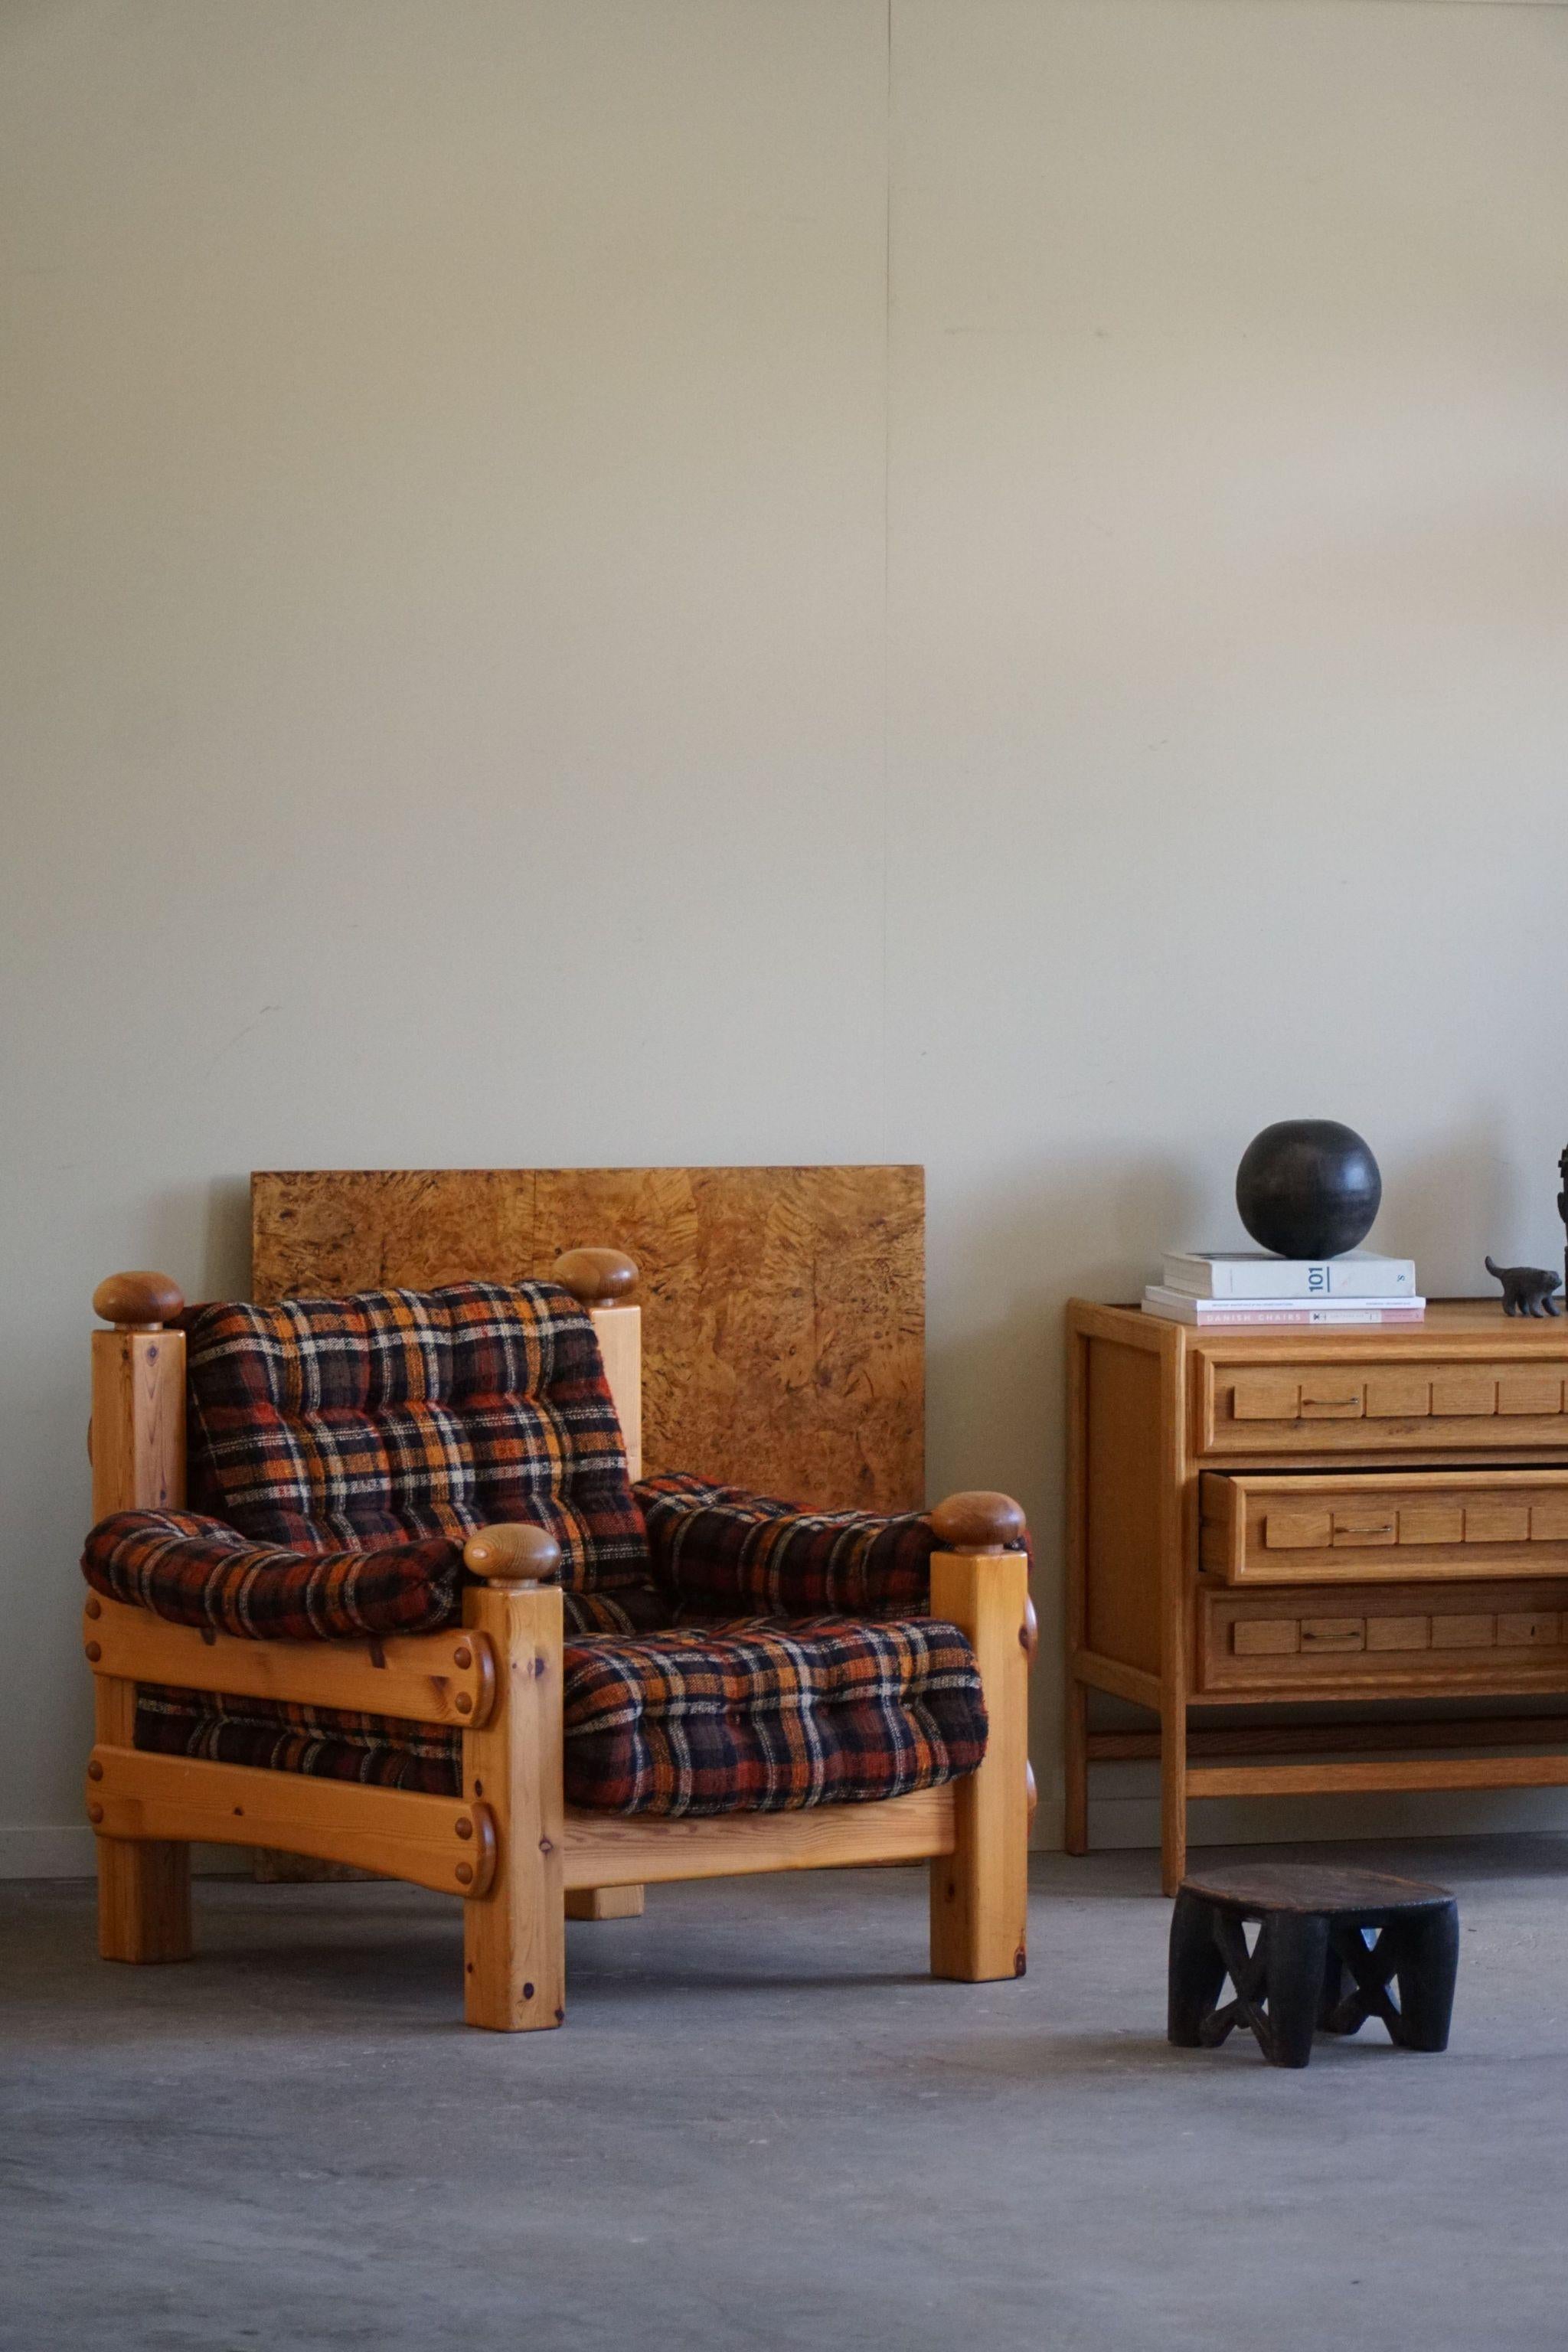 Chaise de salon confortable en pin massif, recouverte d'un tissu vintage. 
Attribué au designer suédois Sven Larsson. Fabriqué dans les années 1970.
Cette charmante chaise longue s'accordera avec de nombreux styles d'intérieur. Une décoration